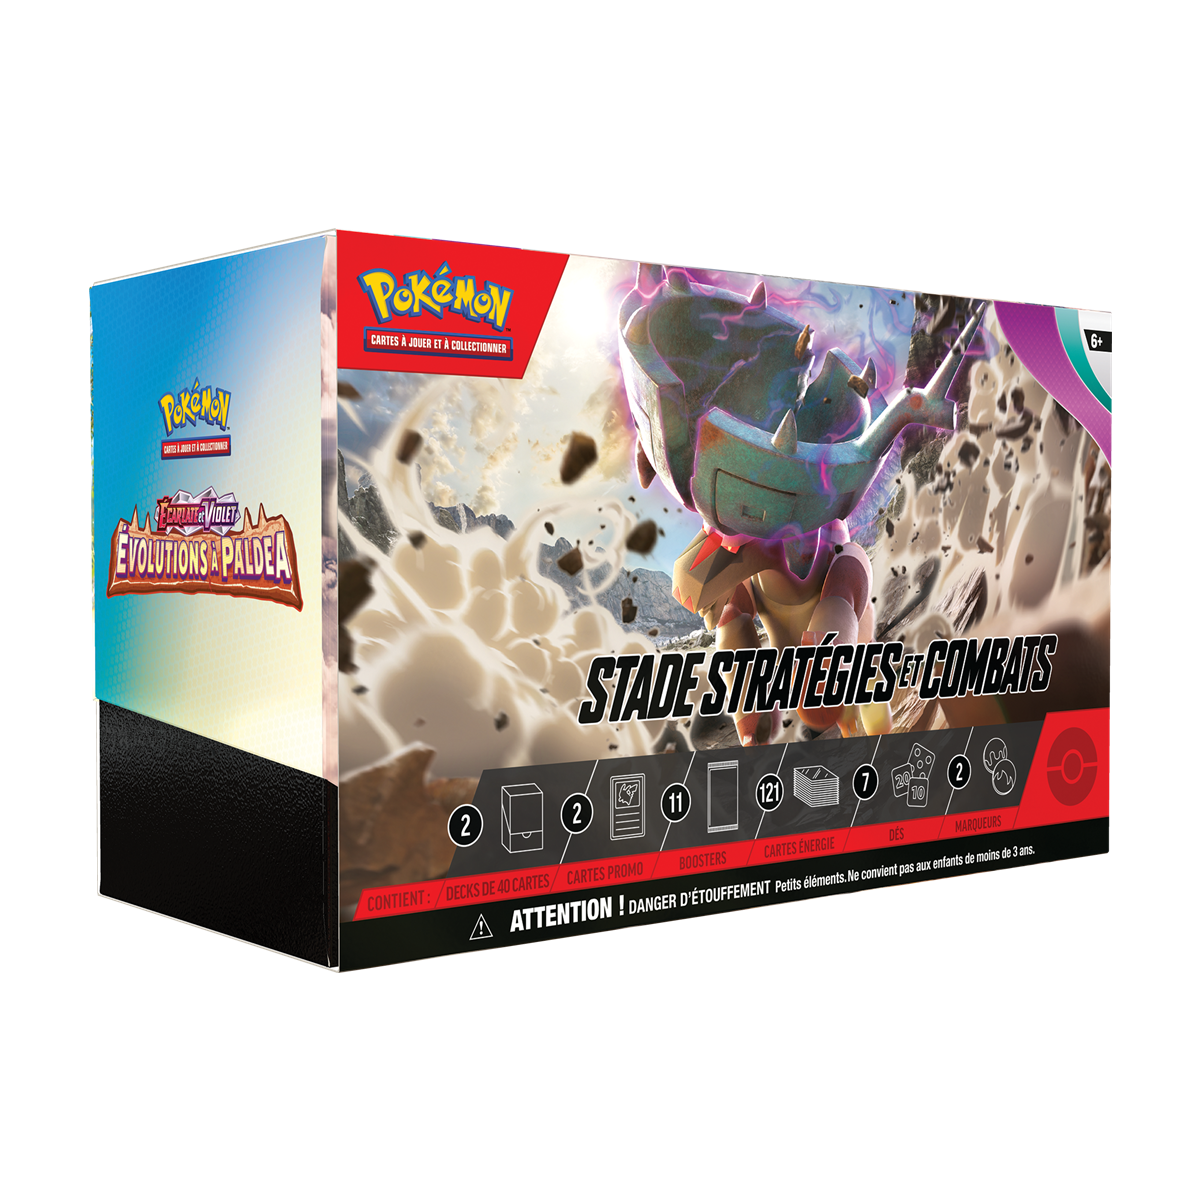 Item Pokémon - Strategies and Battles Stadium - Scarlet & Violet Evolutions in Paldea - [EV02] - FR